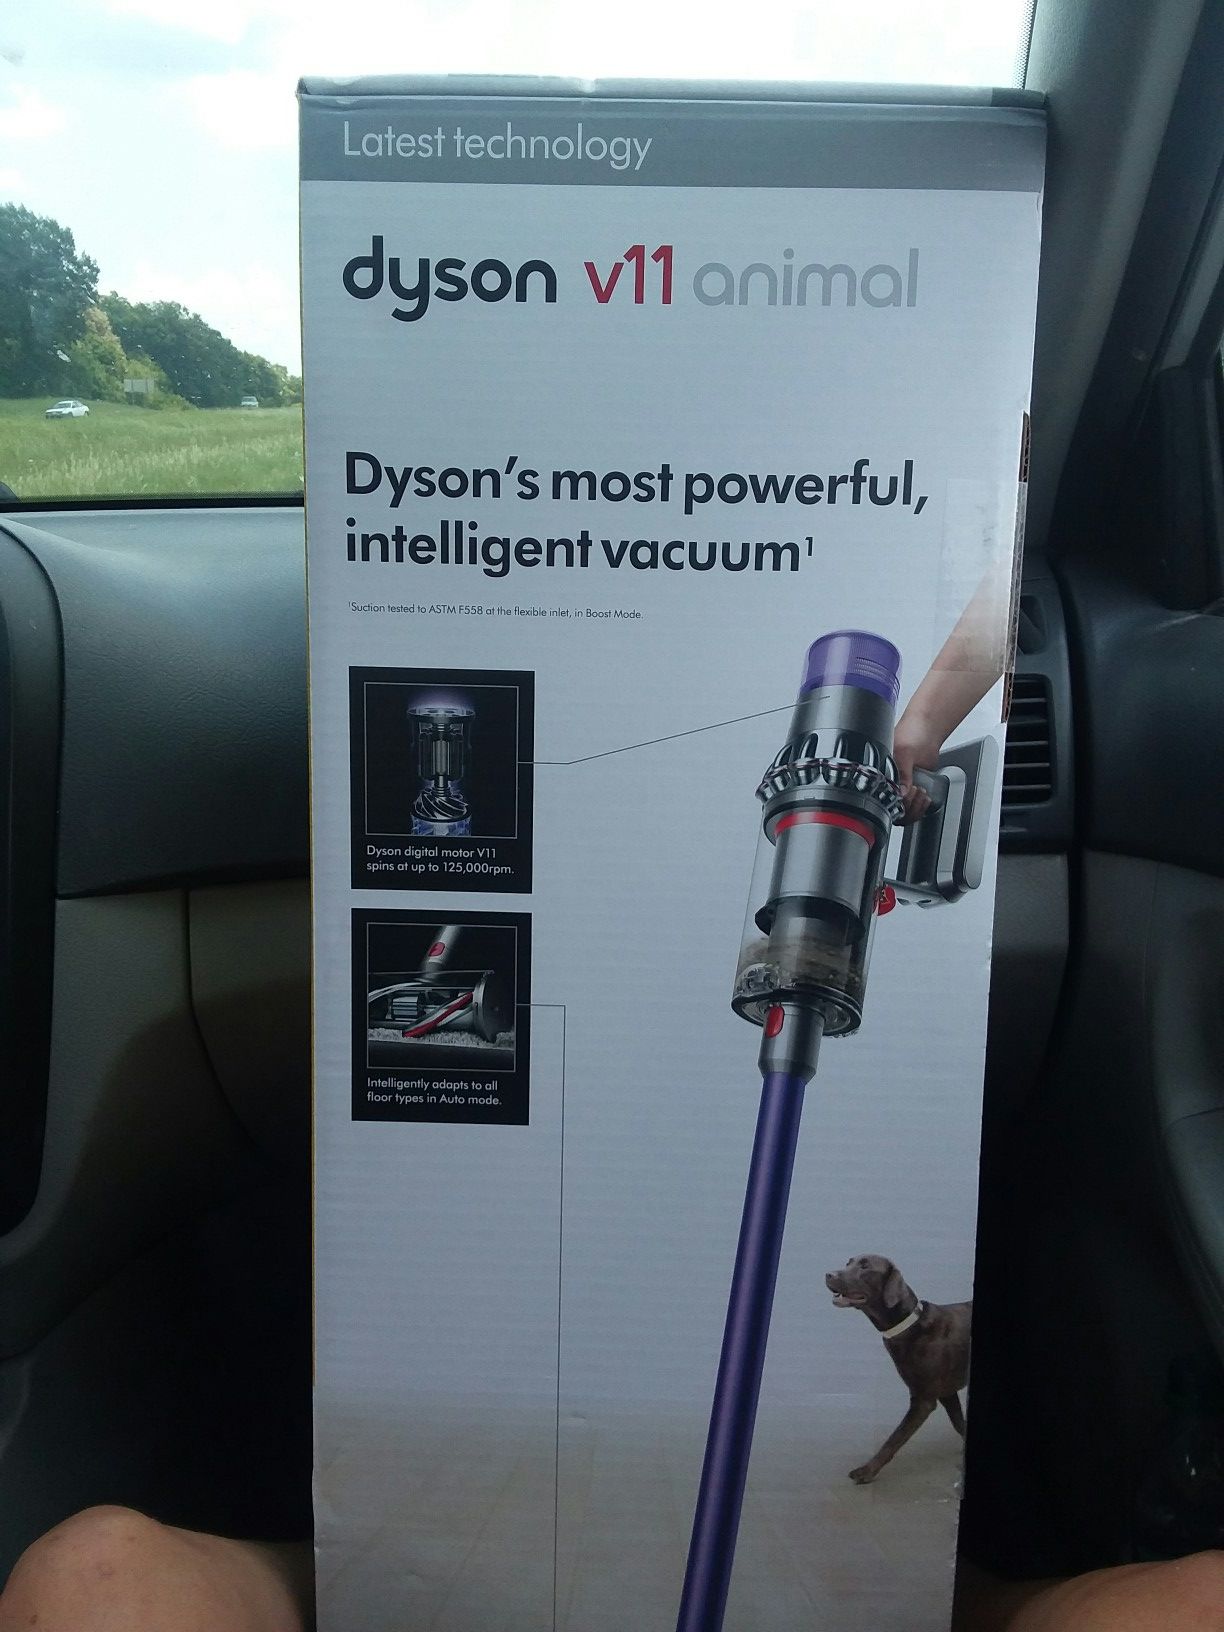 Dyson V11 Animal